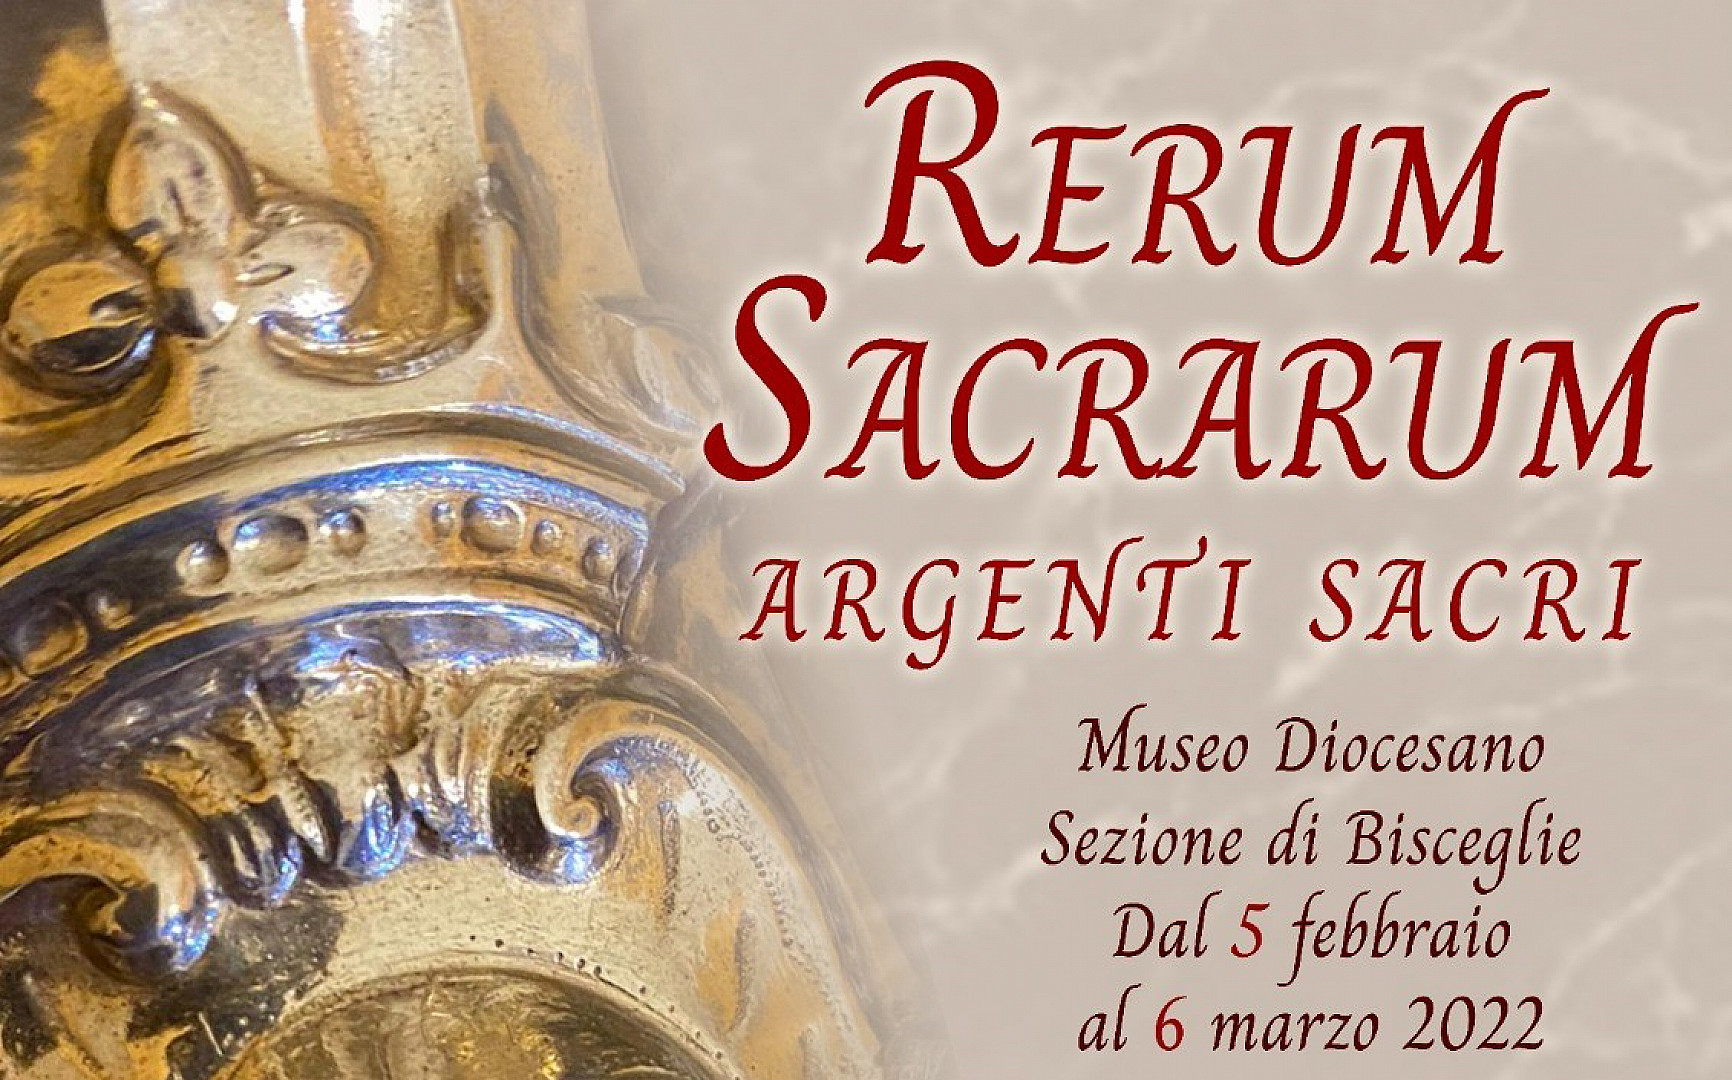 Visita alla mostra "Rerum Sacrarum" e al "Trionfo dell'Eucarestia"